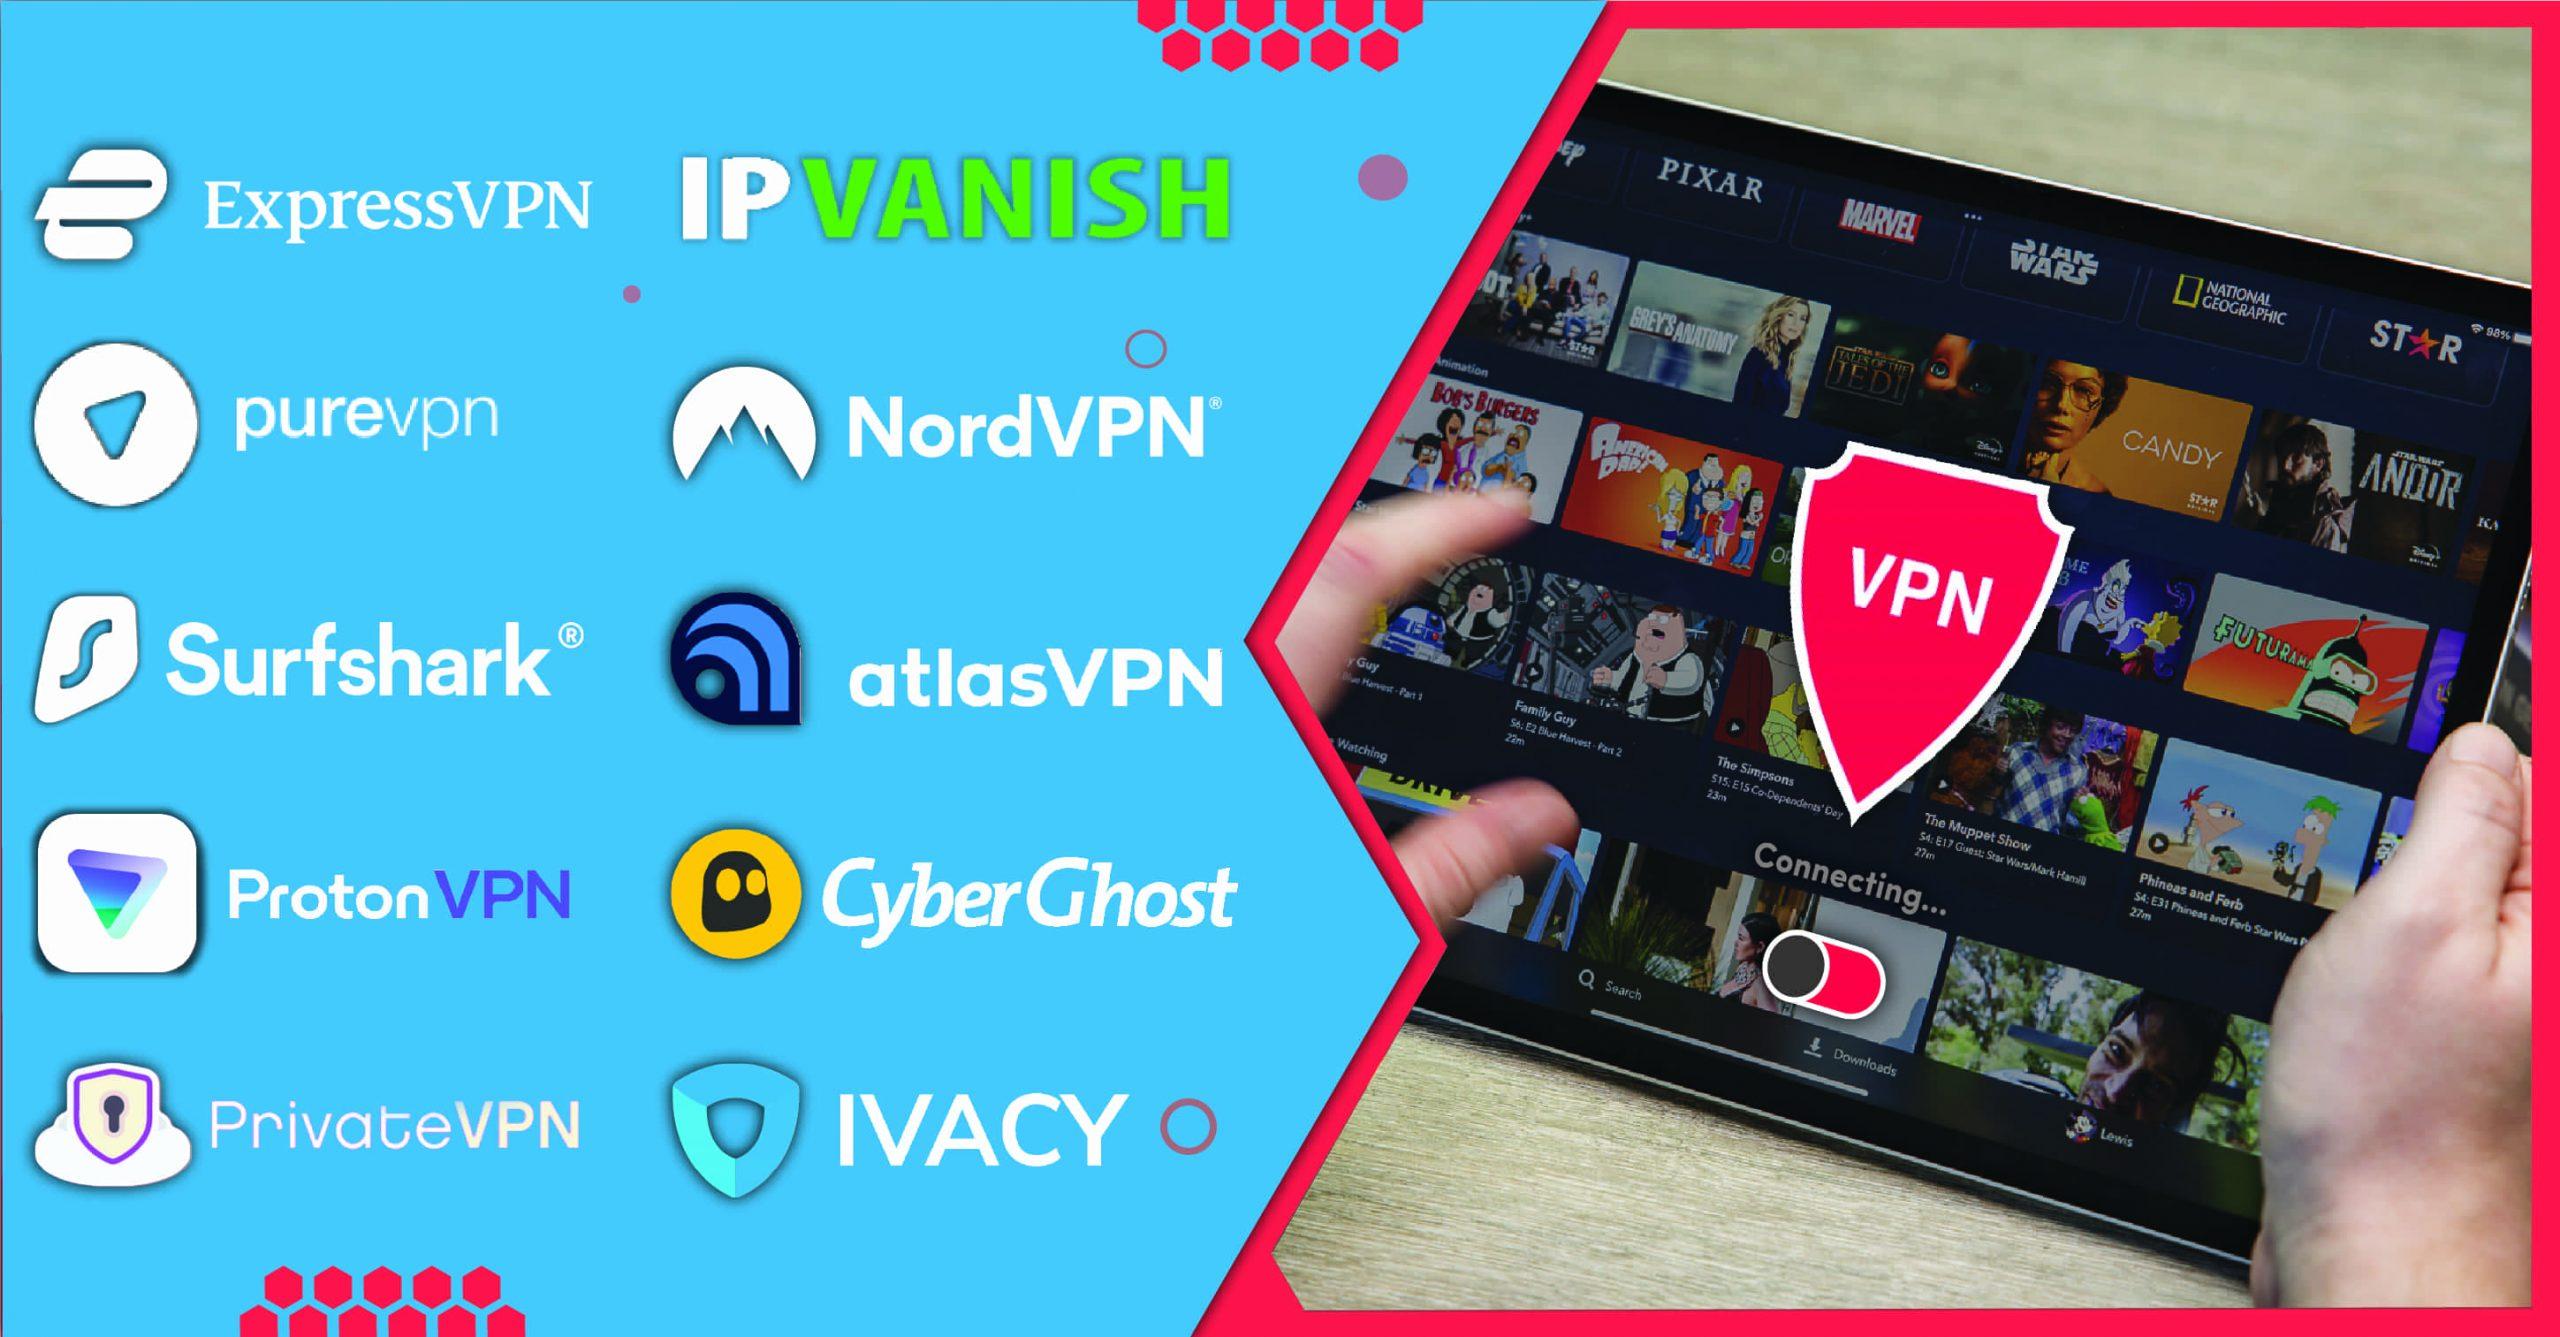 Best VPN for IPTV